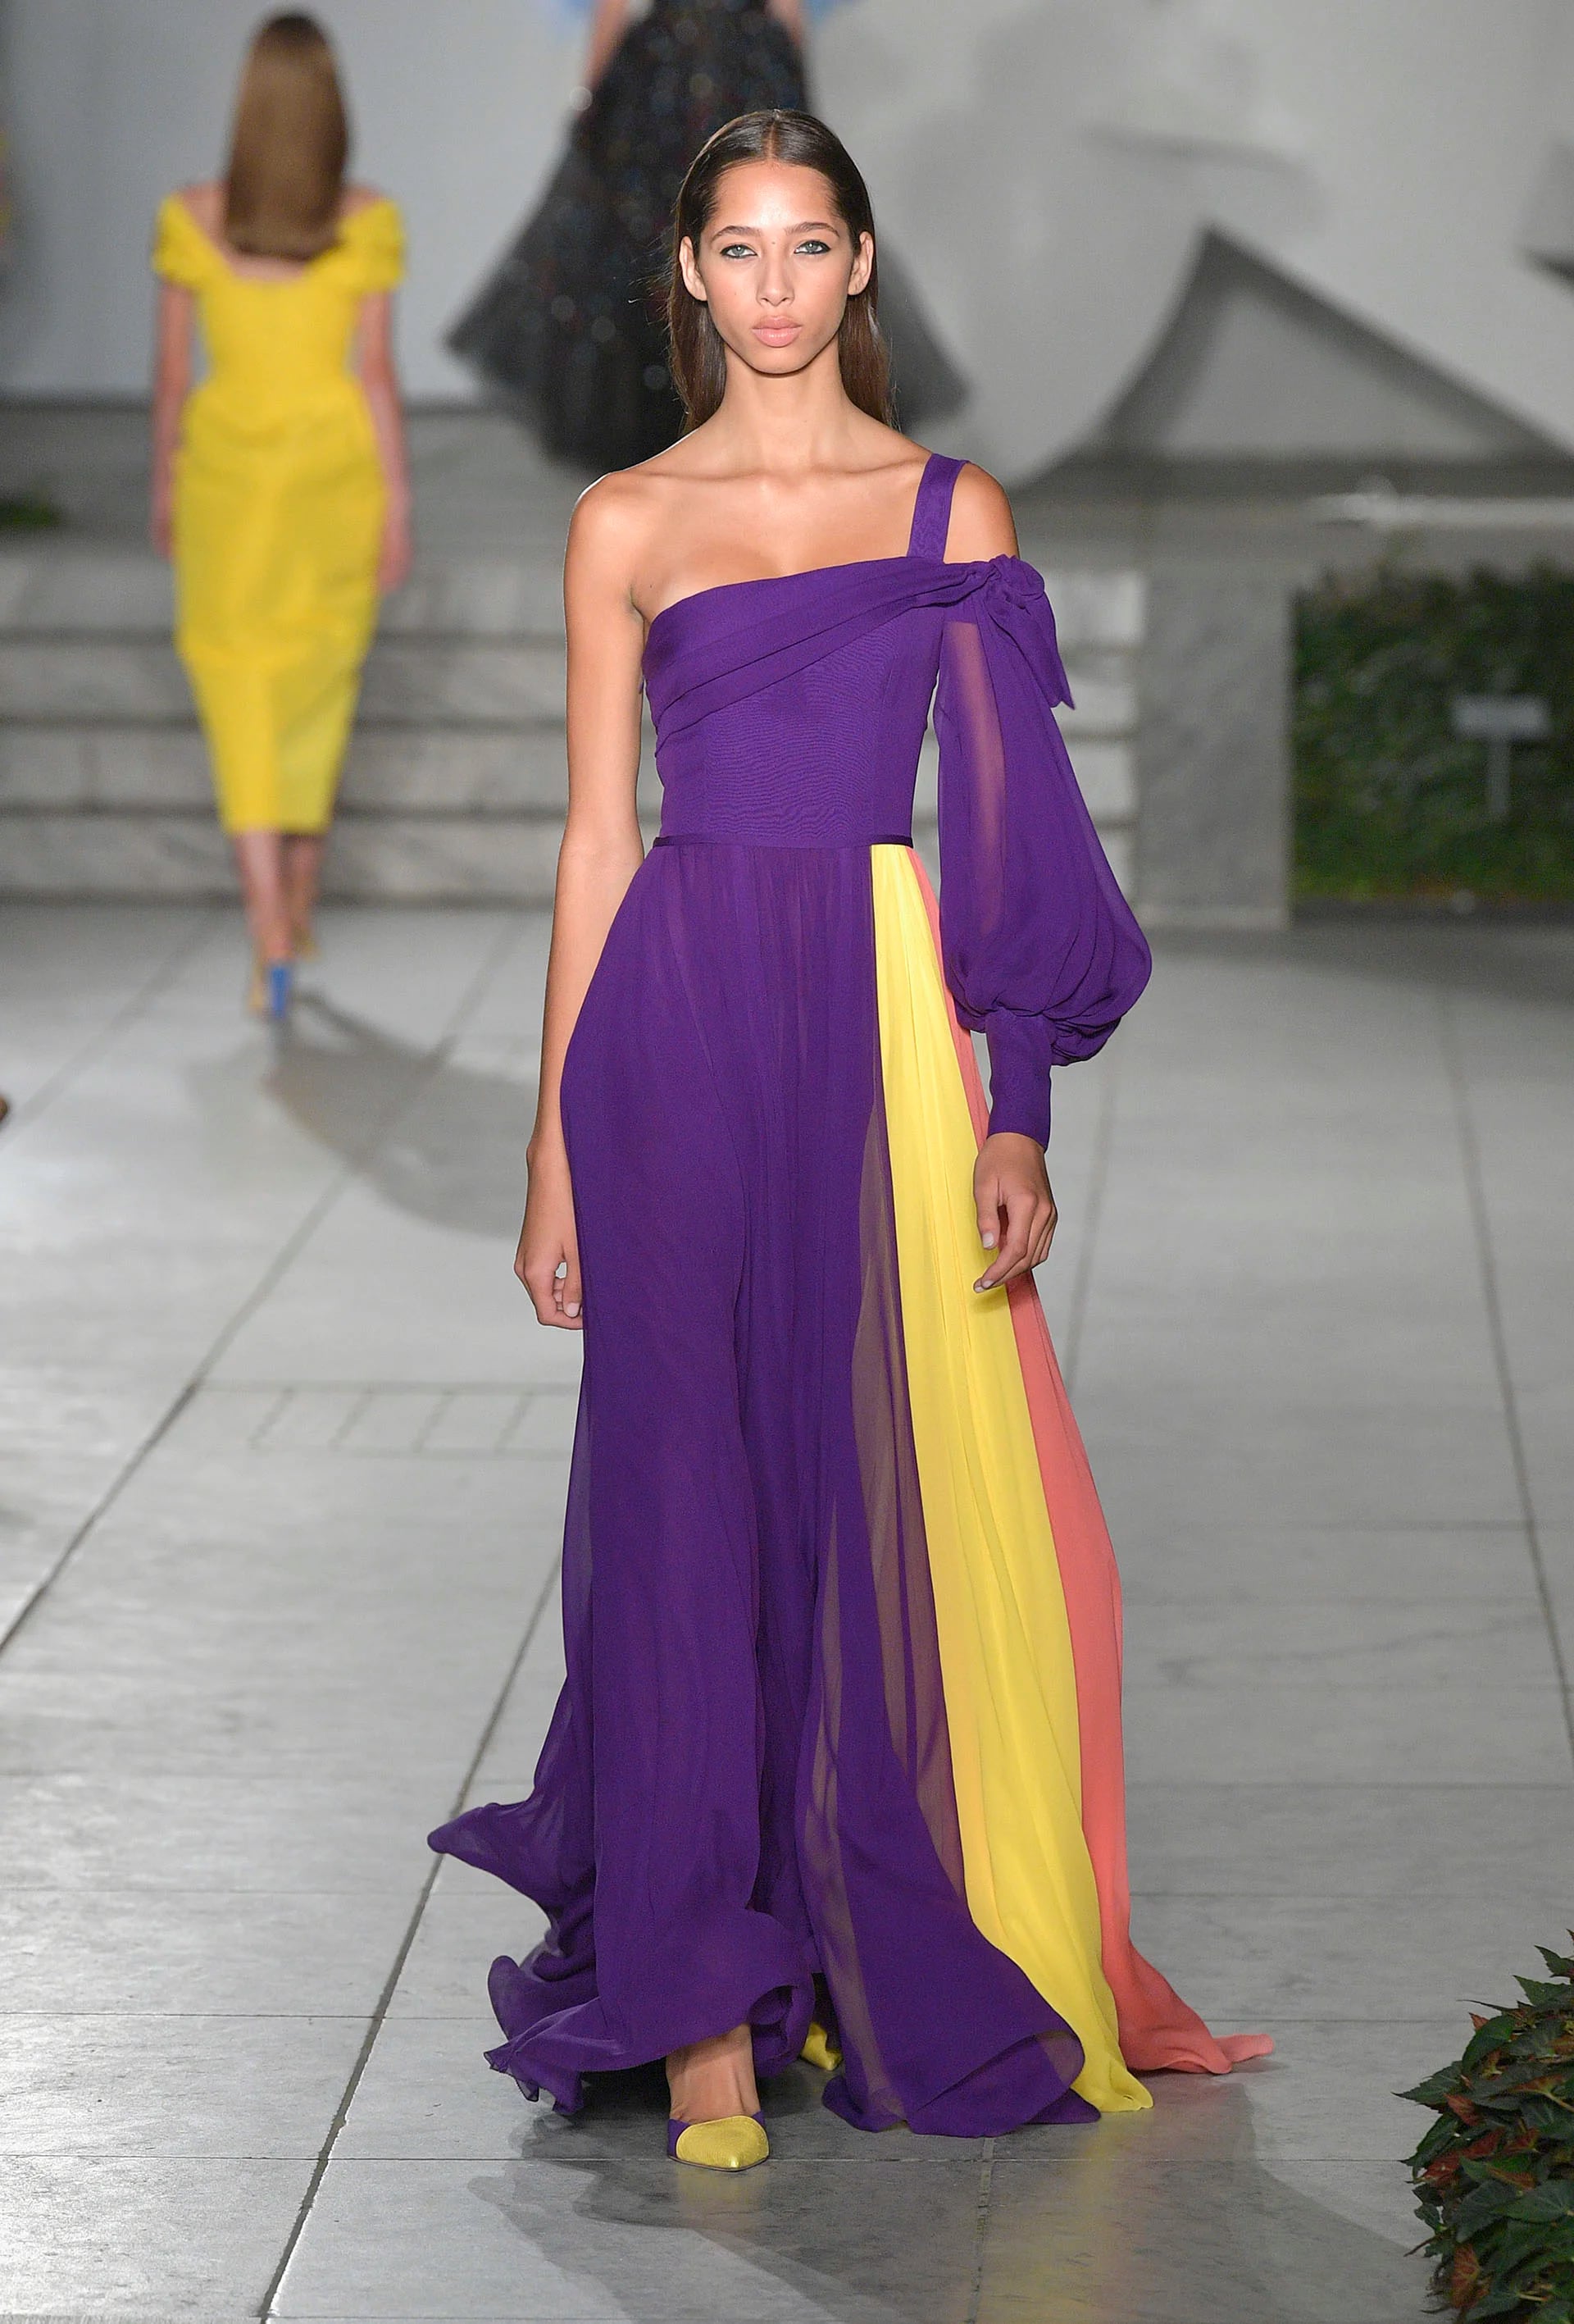 Amarillo, y violeta tiñen de alegría los diseños femeninos de Carolina Herrera - Infobae